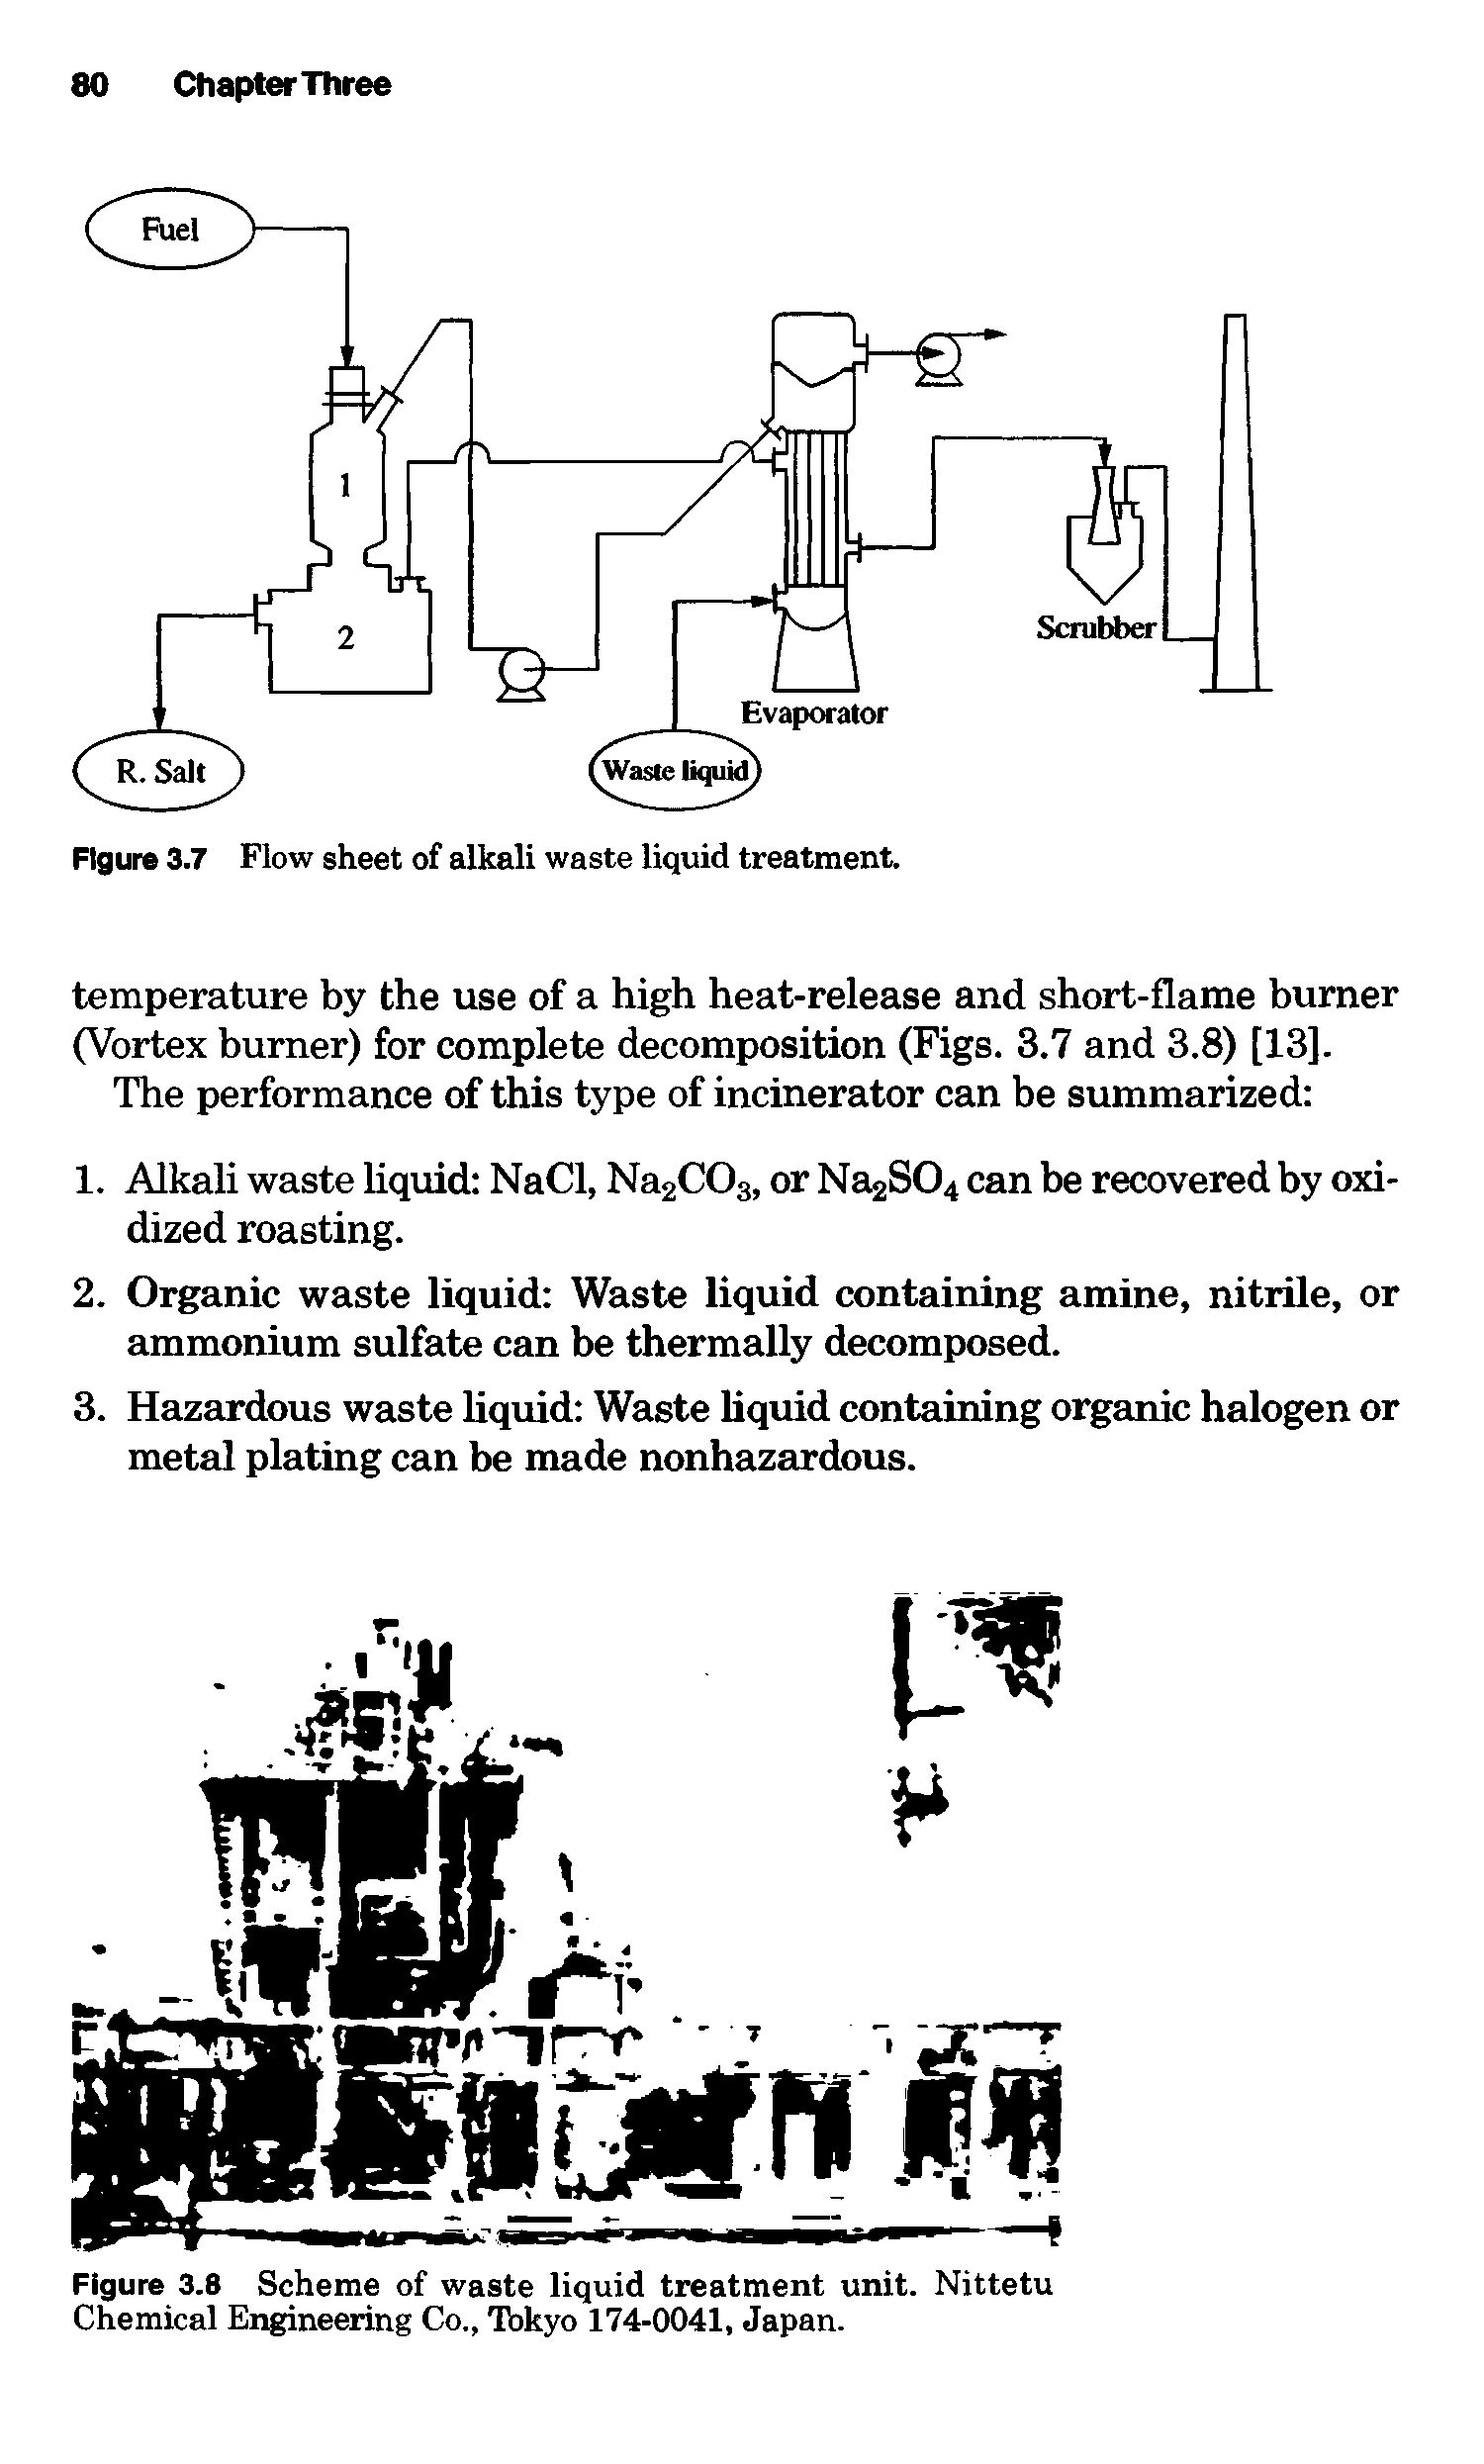 Figure 3.7 Flow sheet of alkali waste liquid treatment.